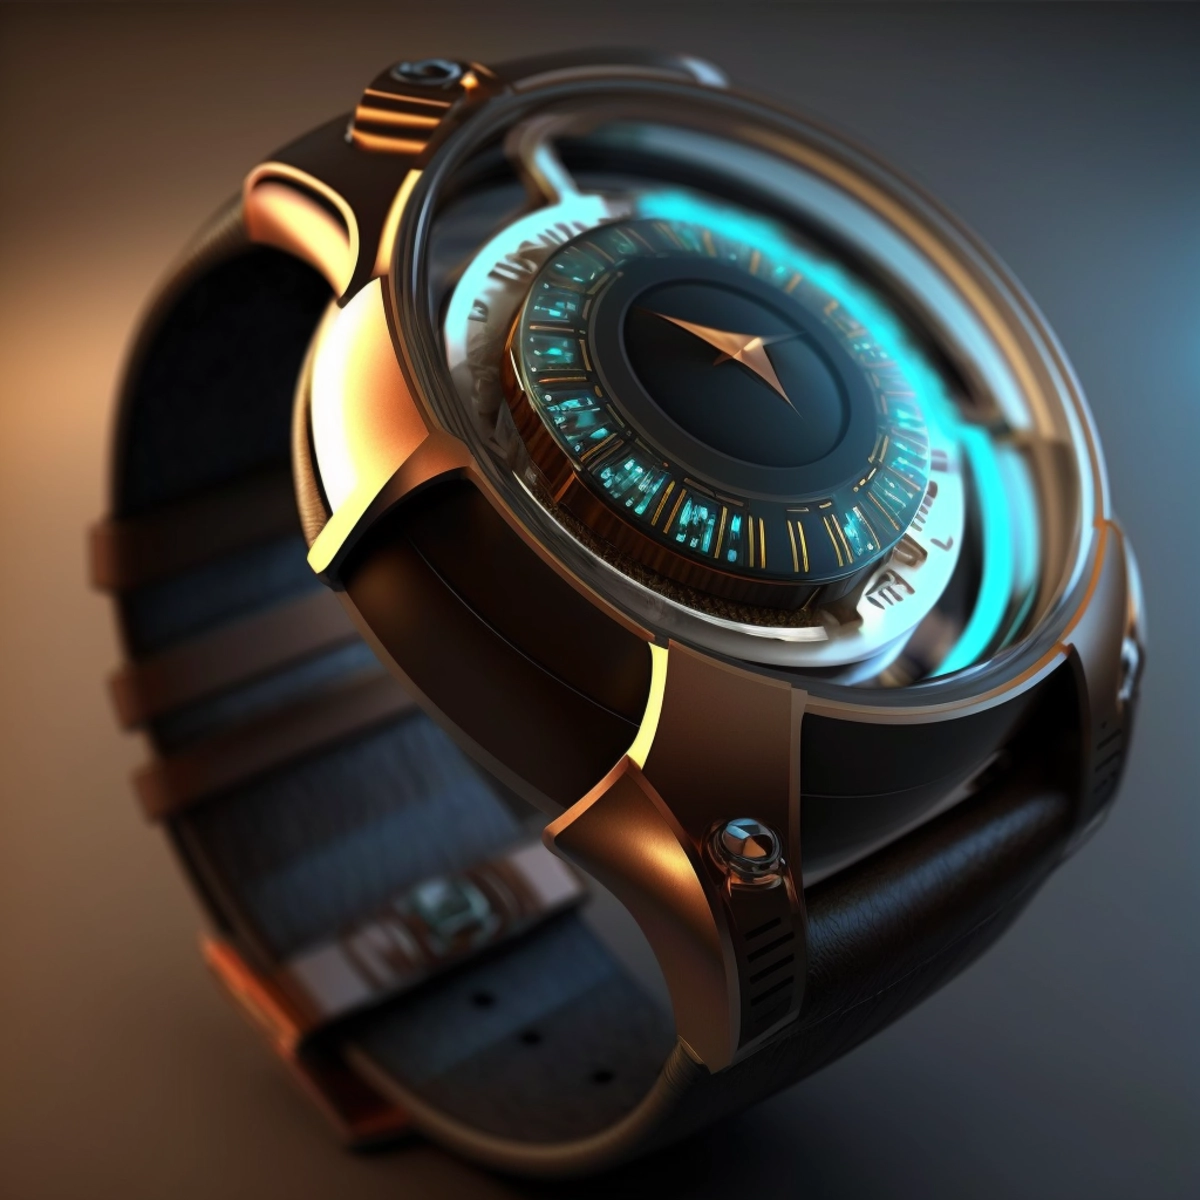 Um design de conceito futurista de um smartwatch com display holográfico, combinando elegância com tecnologia de ponta